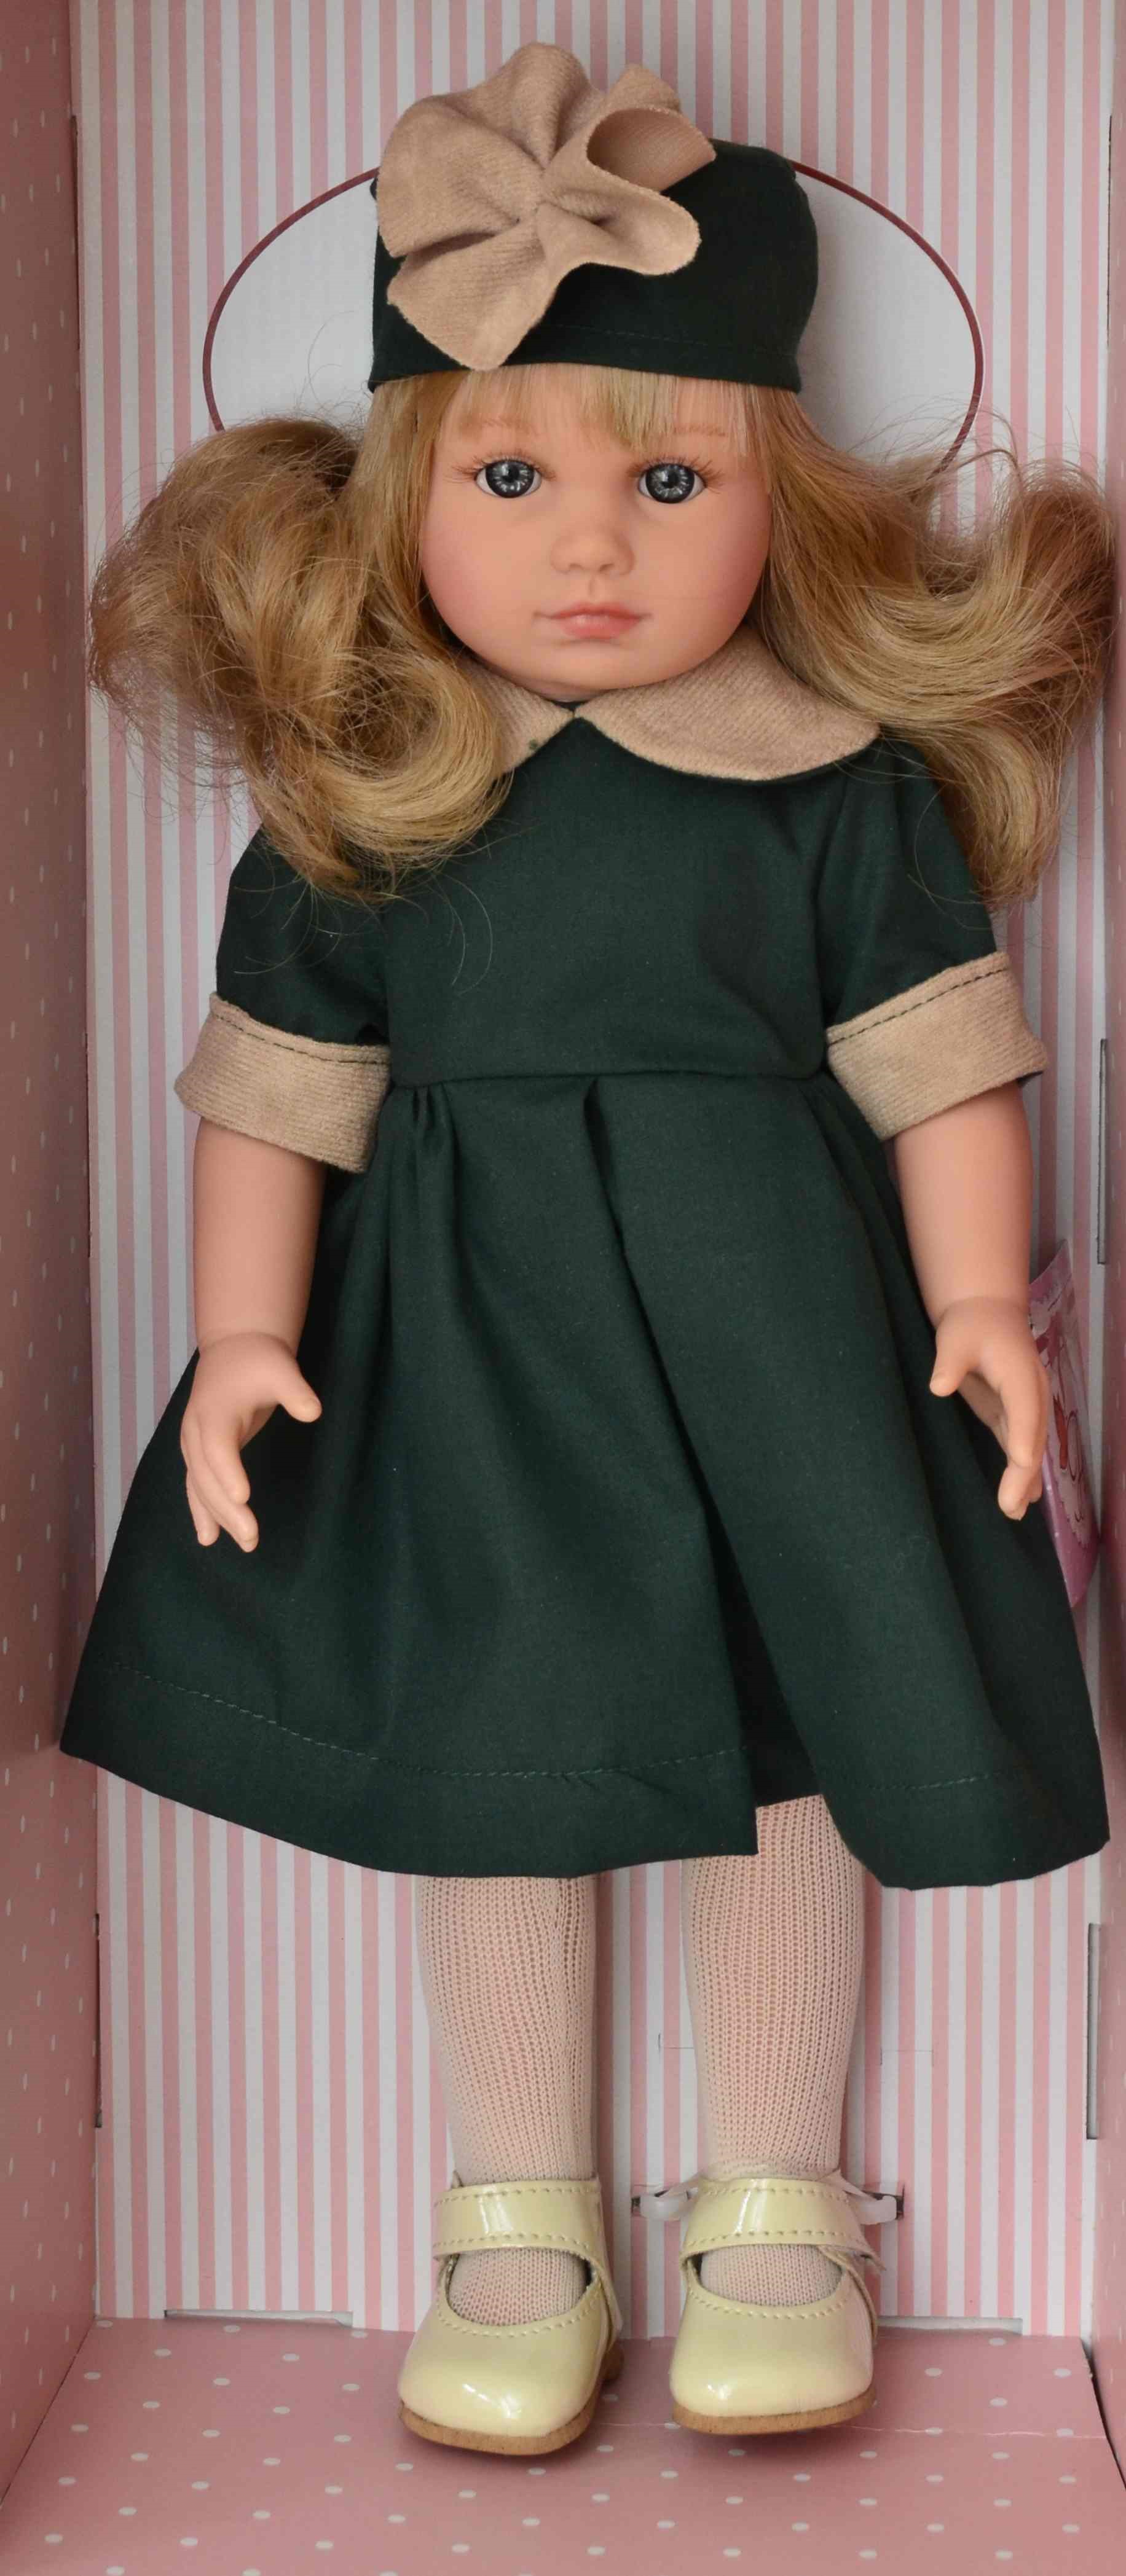 Realistická panenka NELLY v zelených šatech od firmy ASIVIL ze Španělska